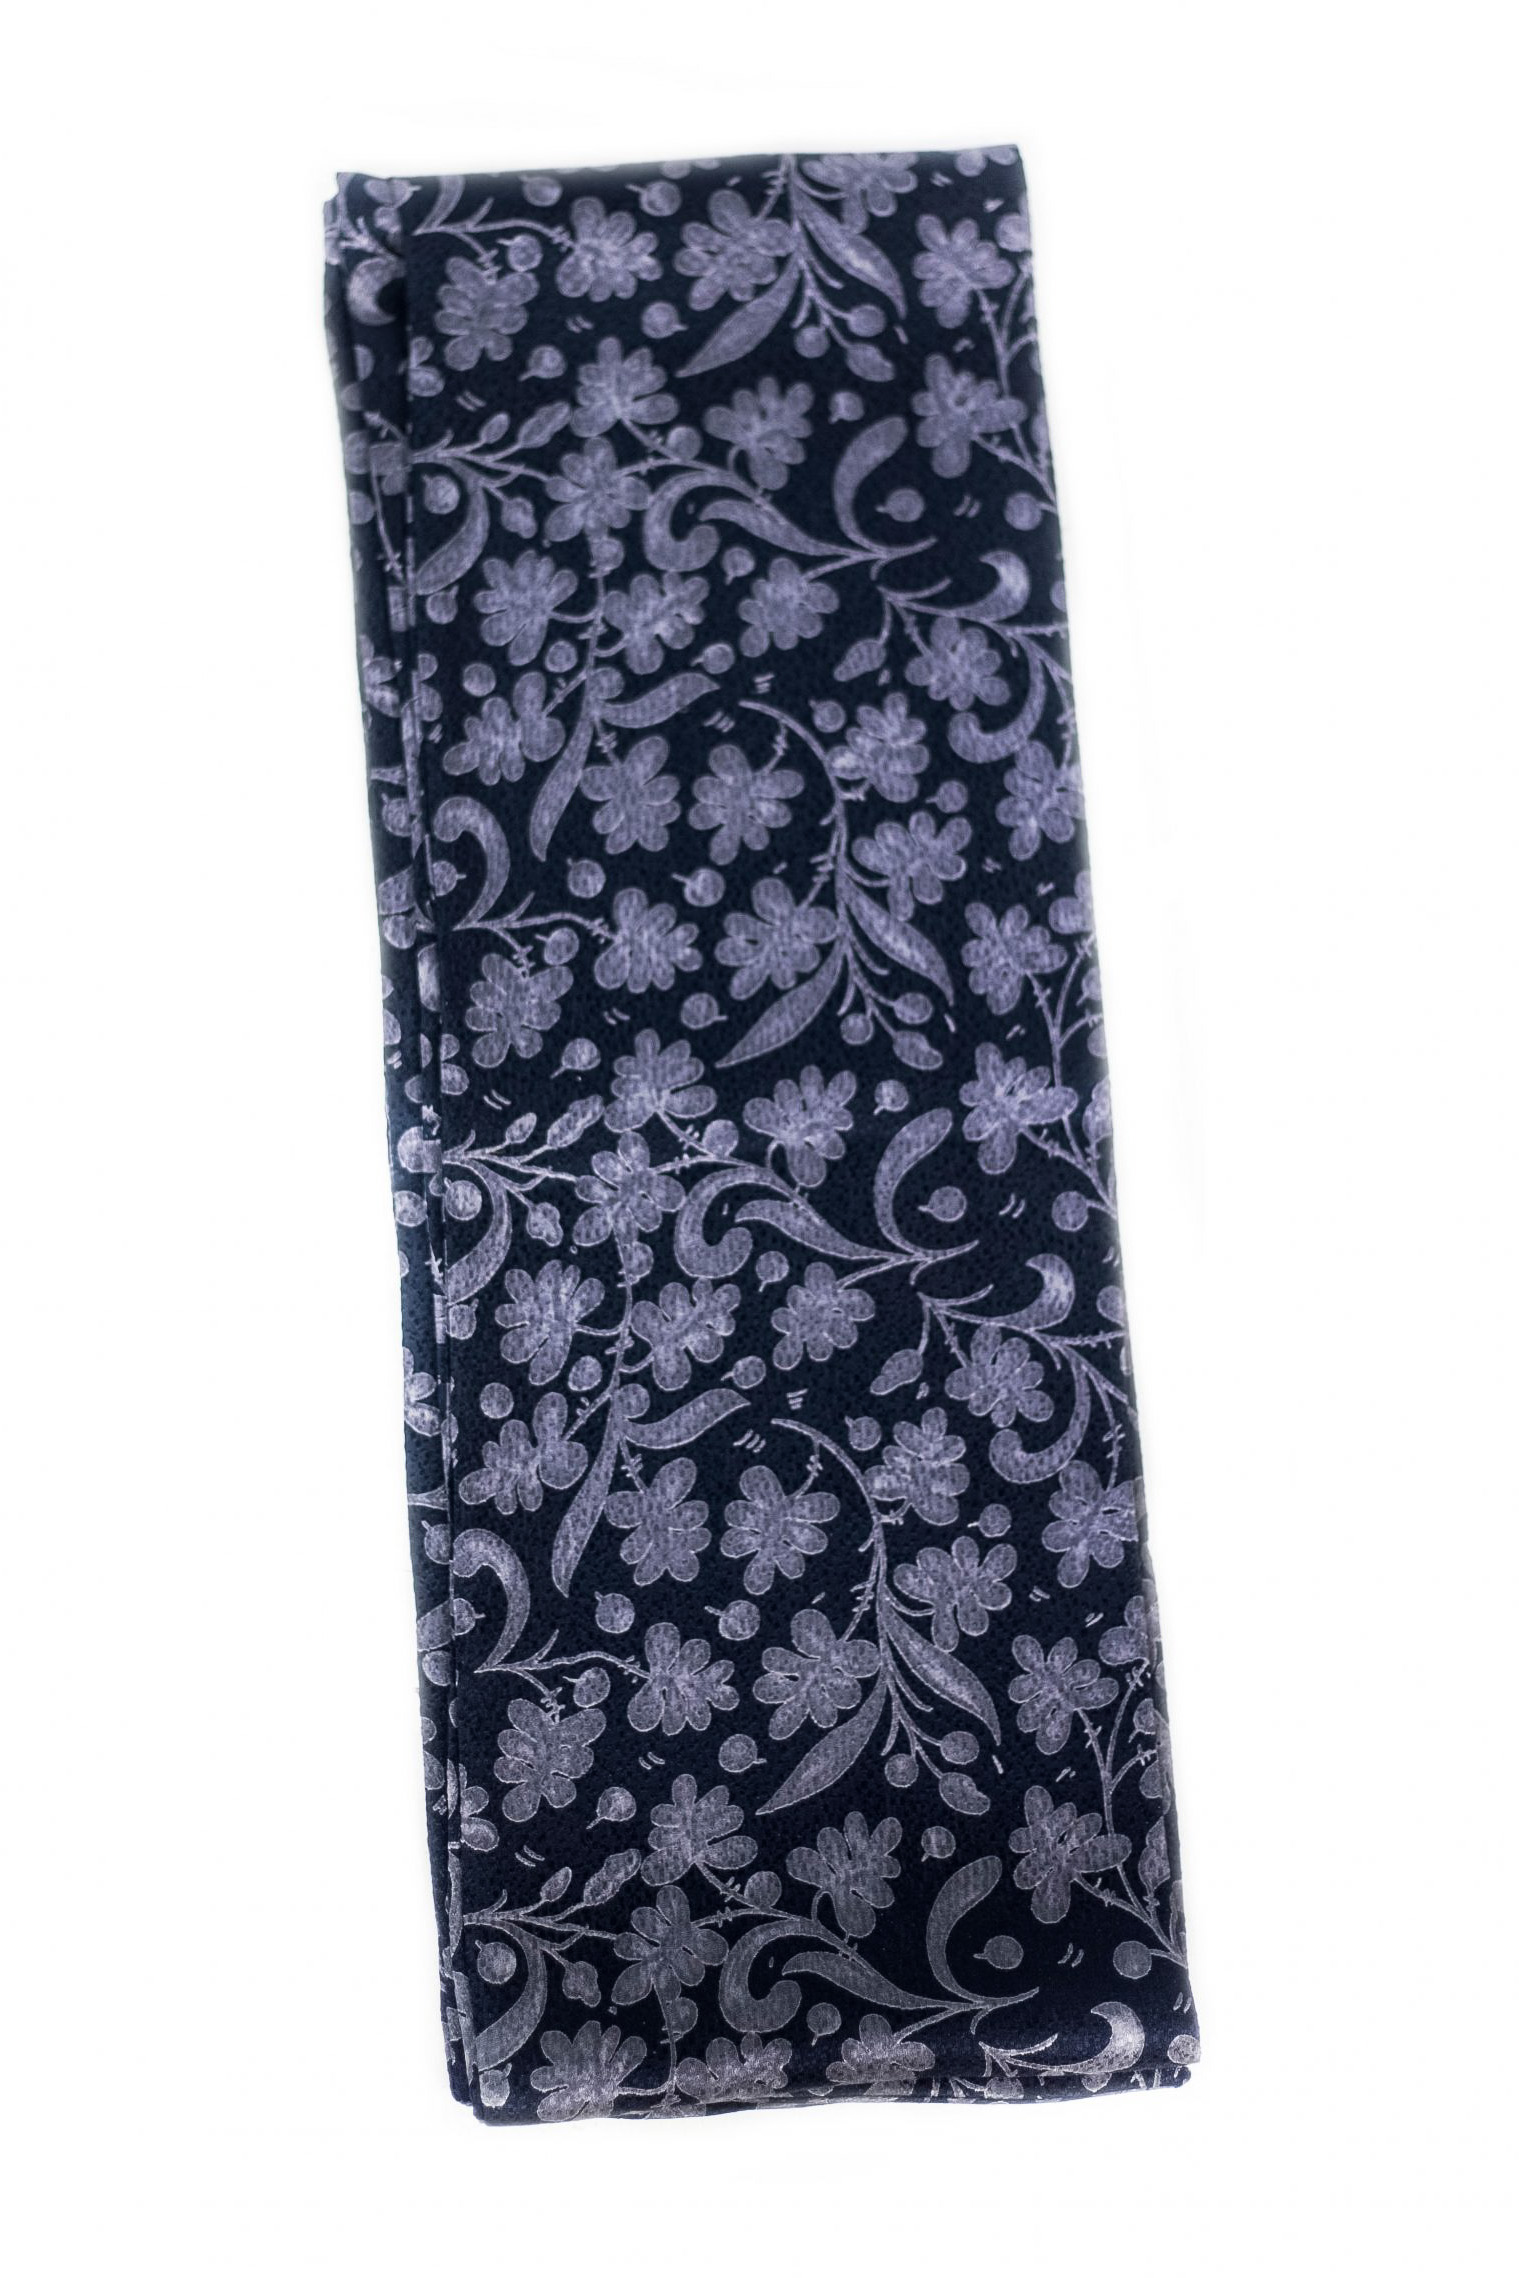 Écharpe en soie pour femme couleur bleue et imprimée avec d'élégantes fleurs grises.